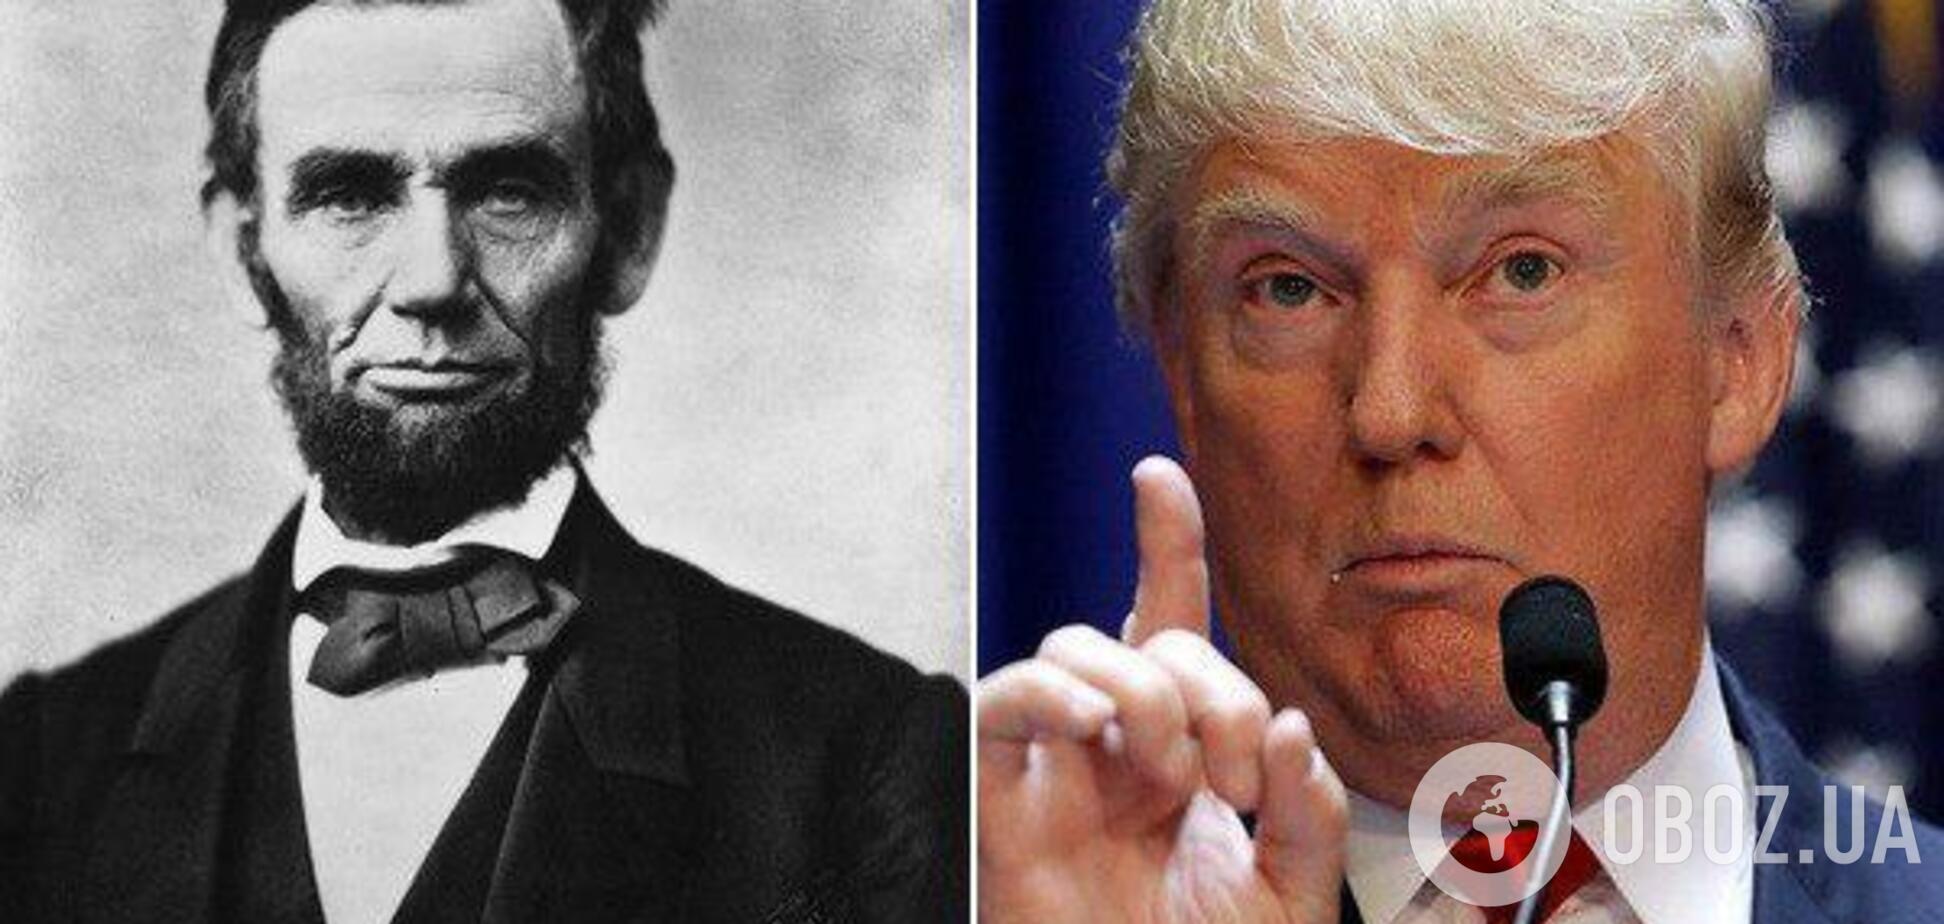 Трамп лучше Линкольна? В США всплыл неожиданный опрос